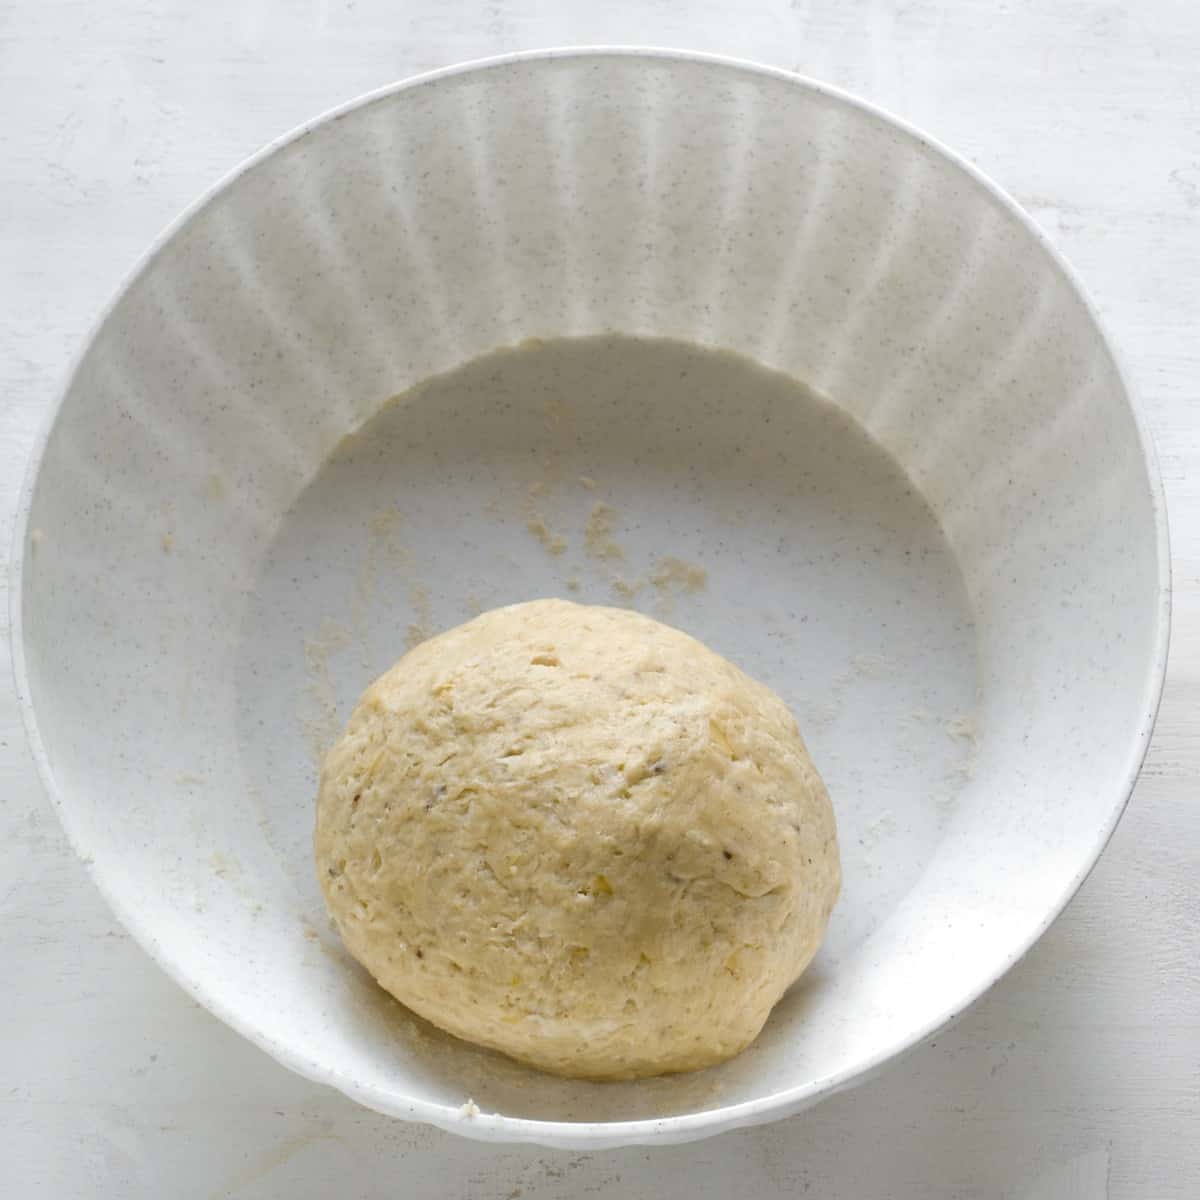 Dough for zelnicky bicsuits.